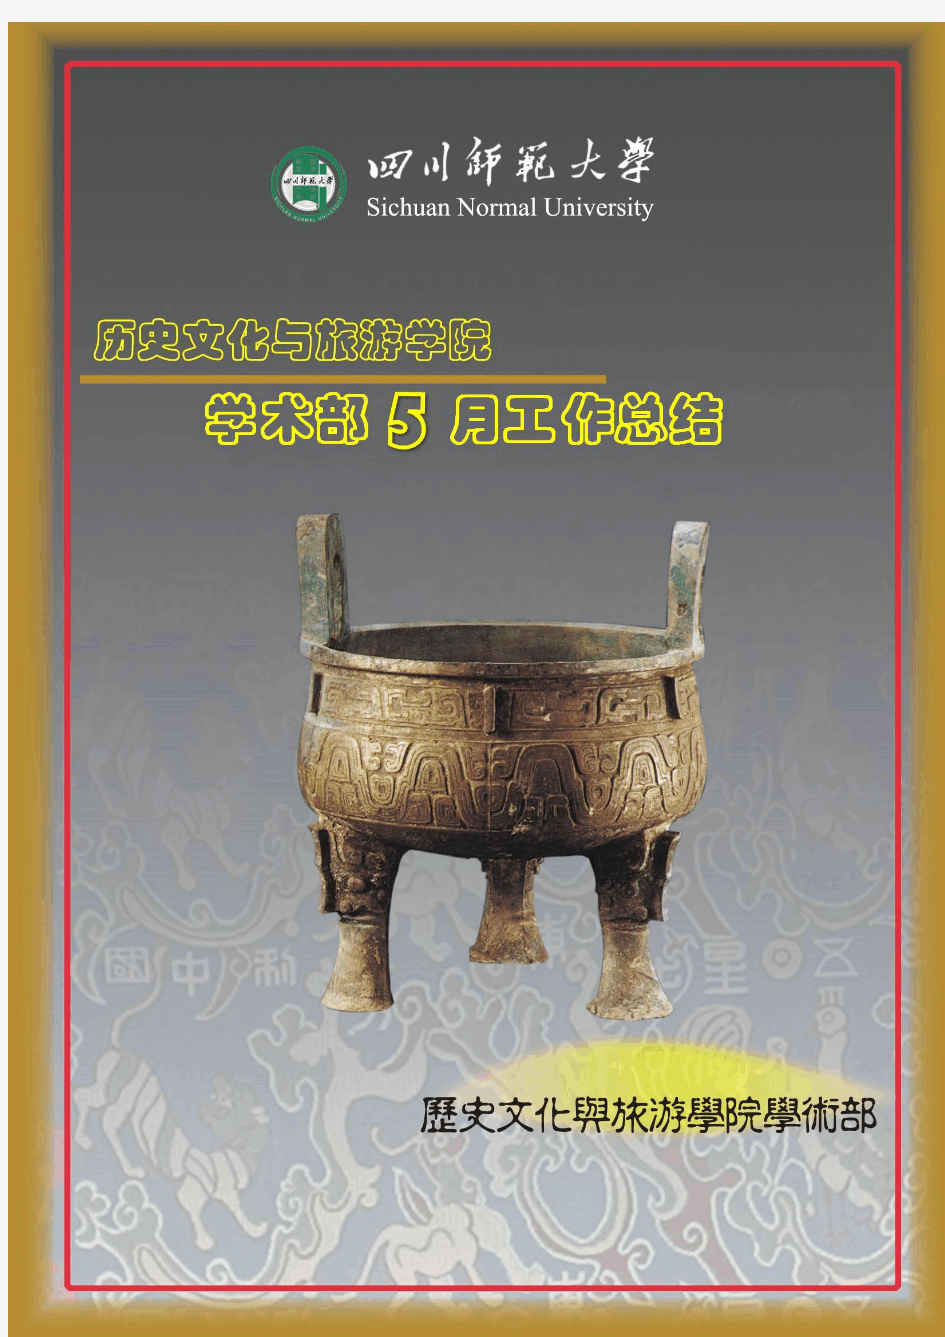 四川师范大学历史文化与旅游学院学术部2013年5月工作总结